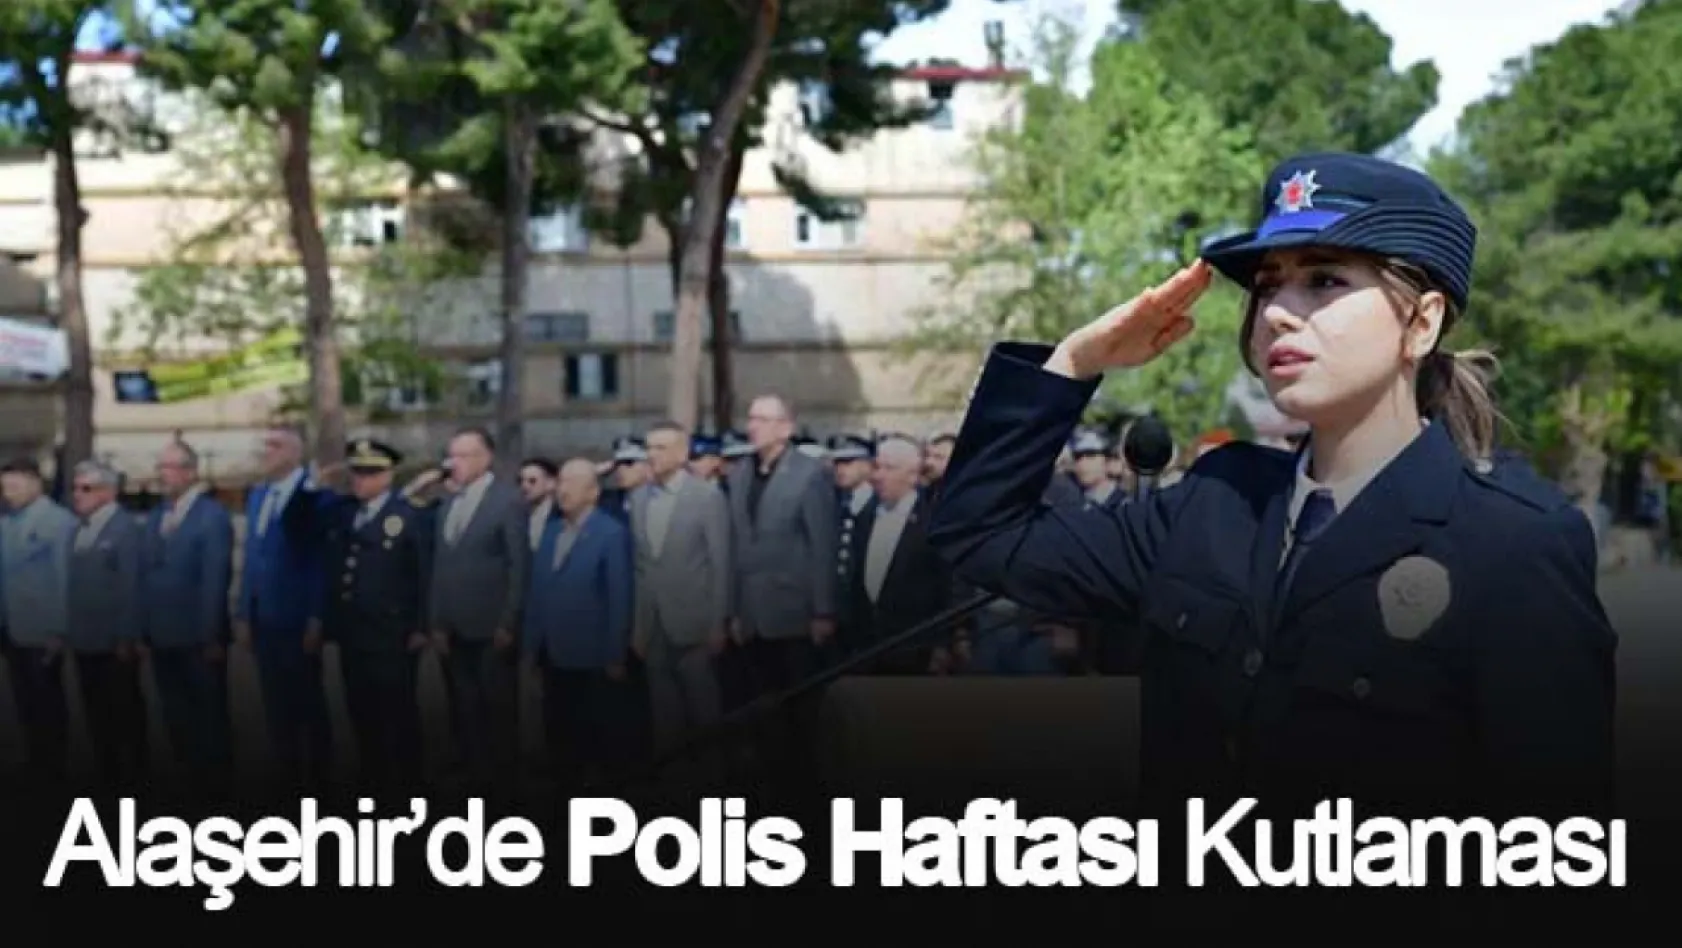 Alaşehir'de Polis Haftası kutlaması